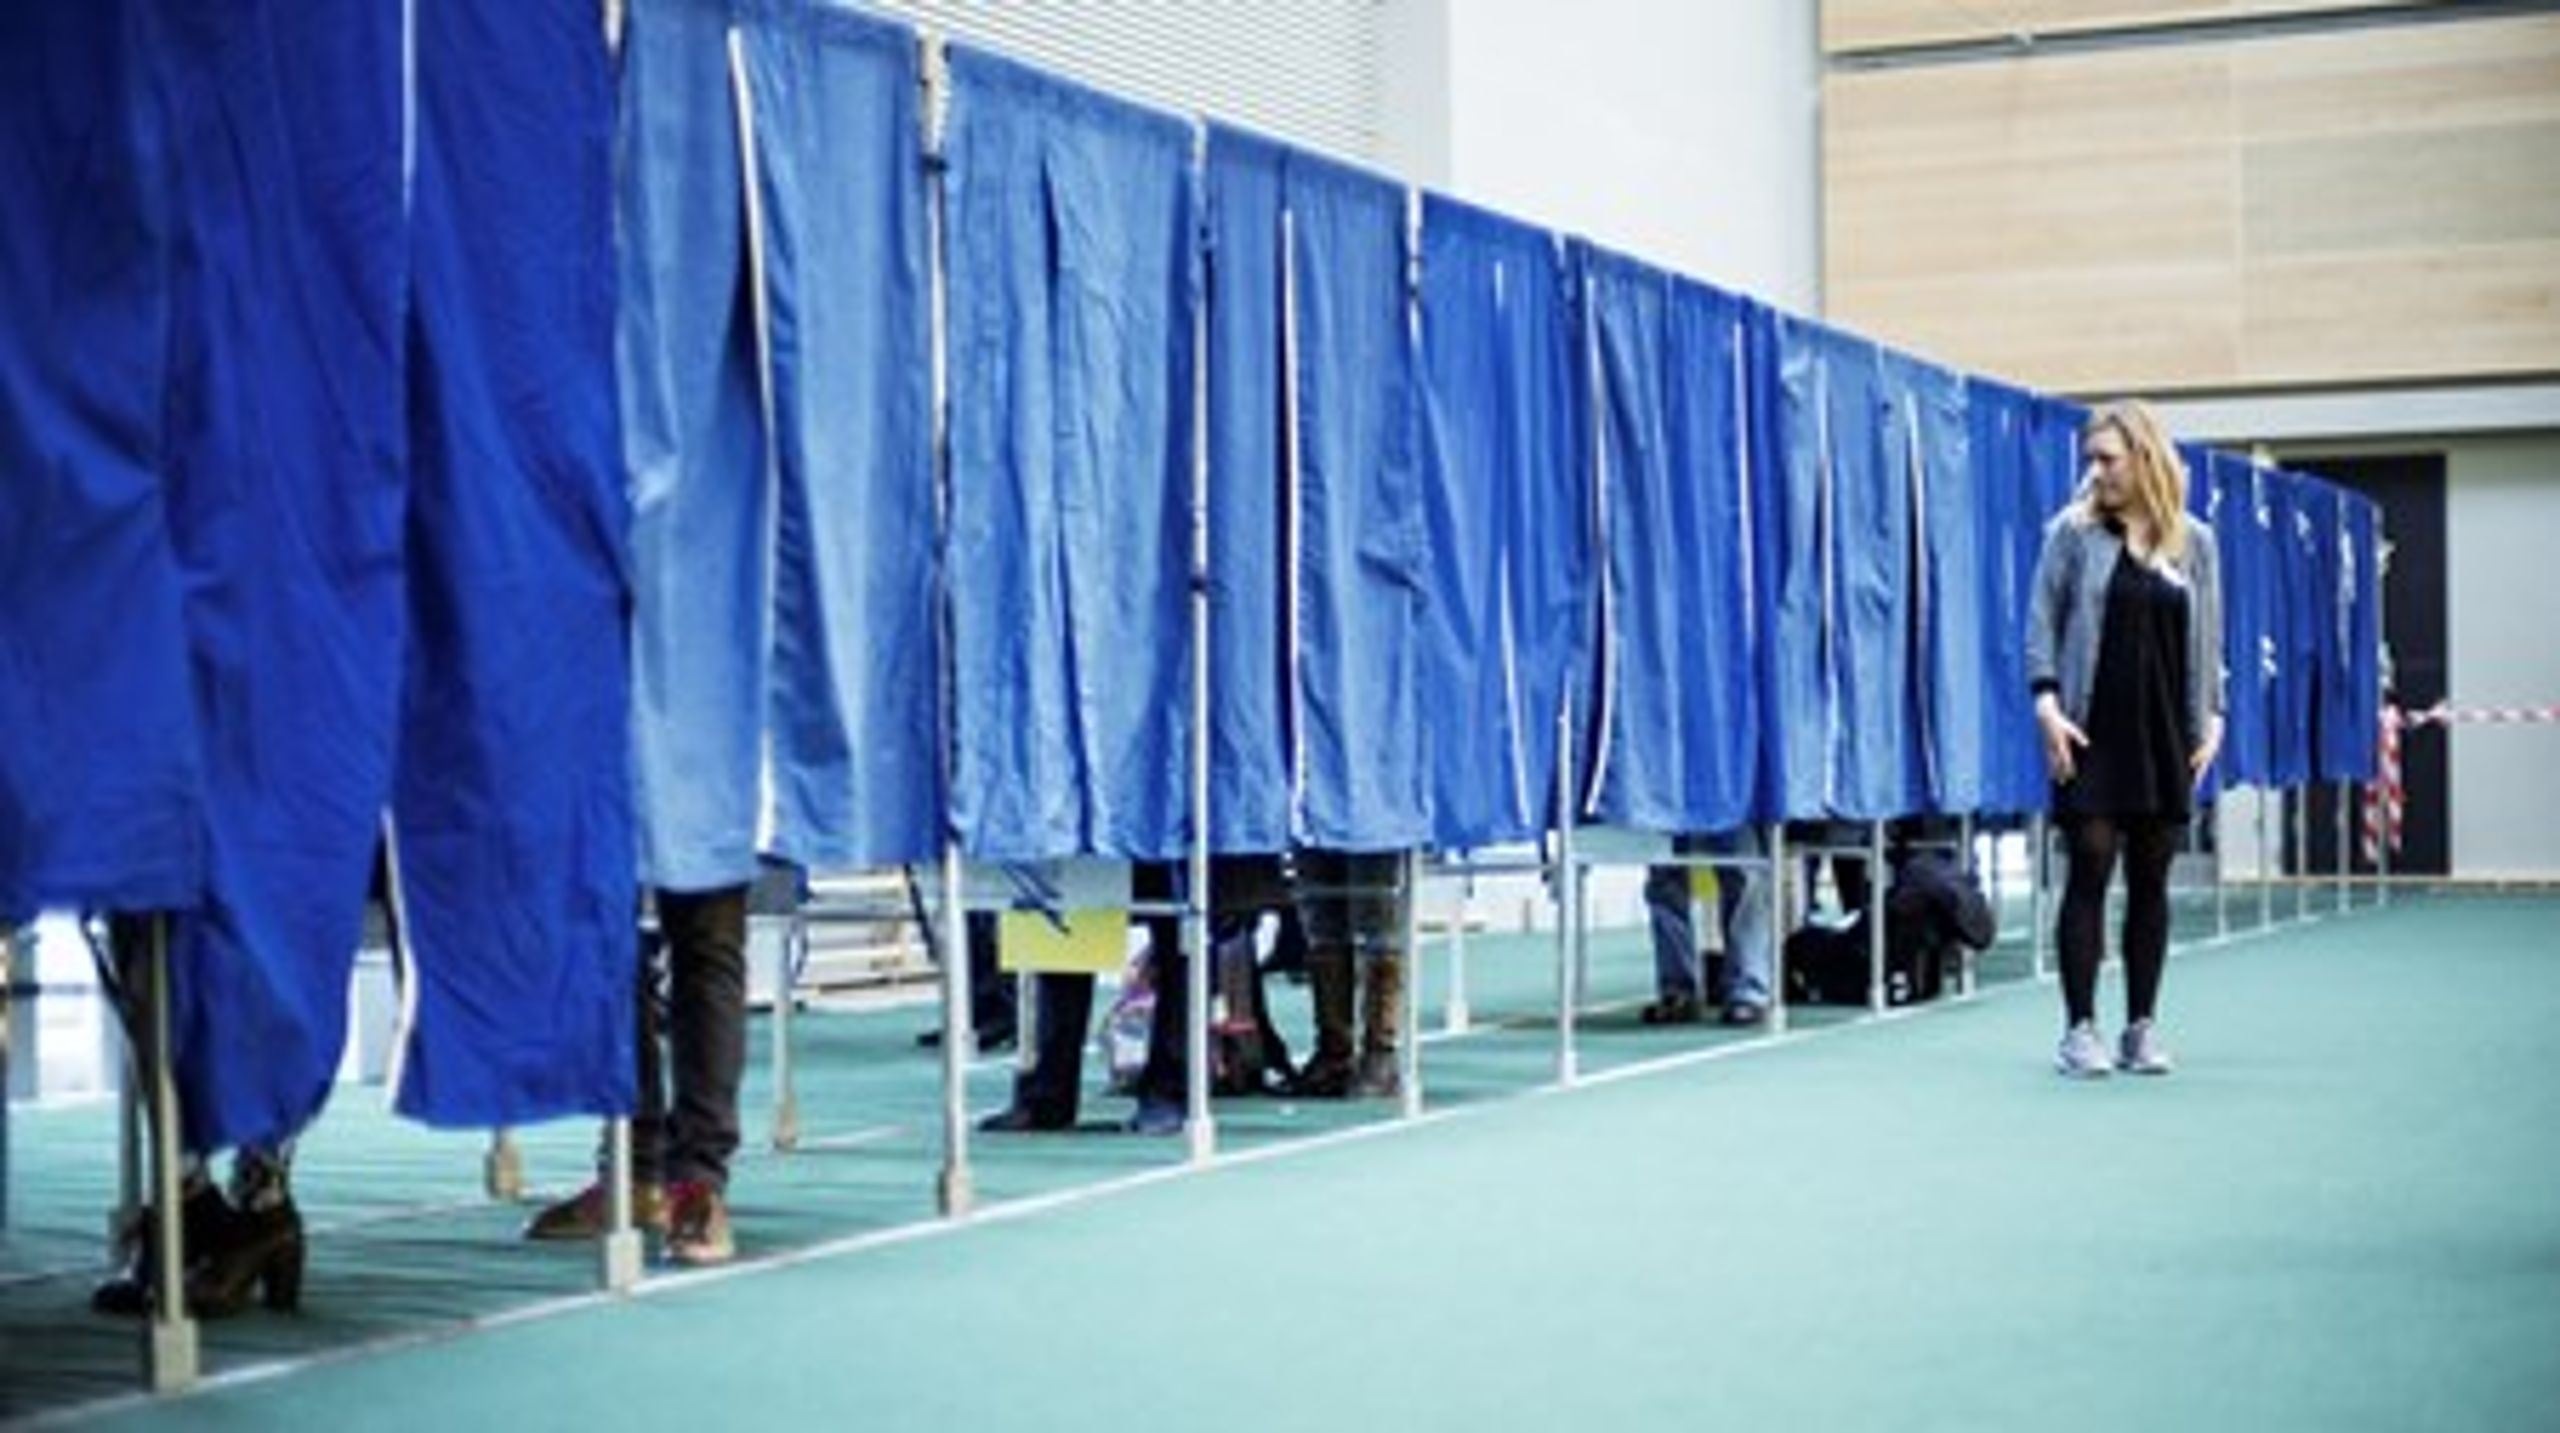 Ved sidste folketingsvalg&nbsp;ventede 9,9 procent af vælgerne til selve valgdagen, før de traf den endelige&nbsp;beslutning om, hvem der skulle have deres stemme.&nbsp;